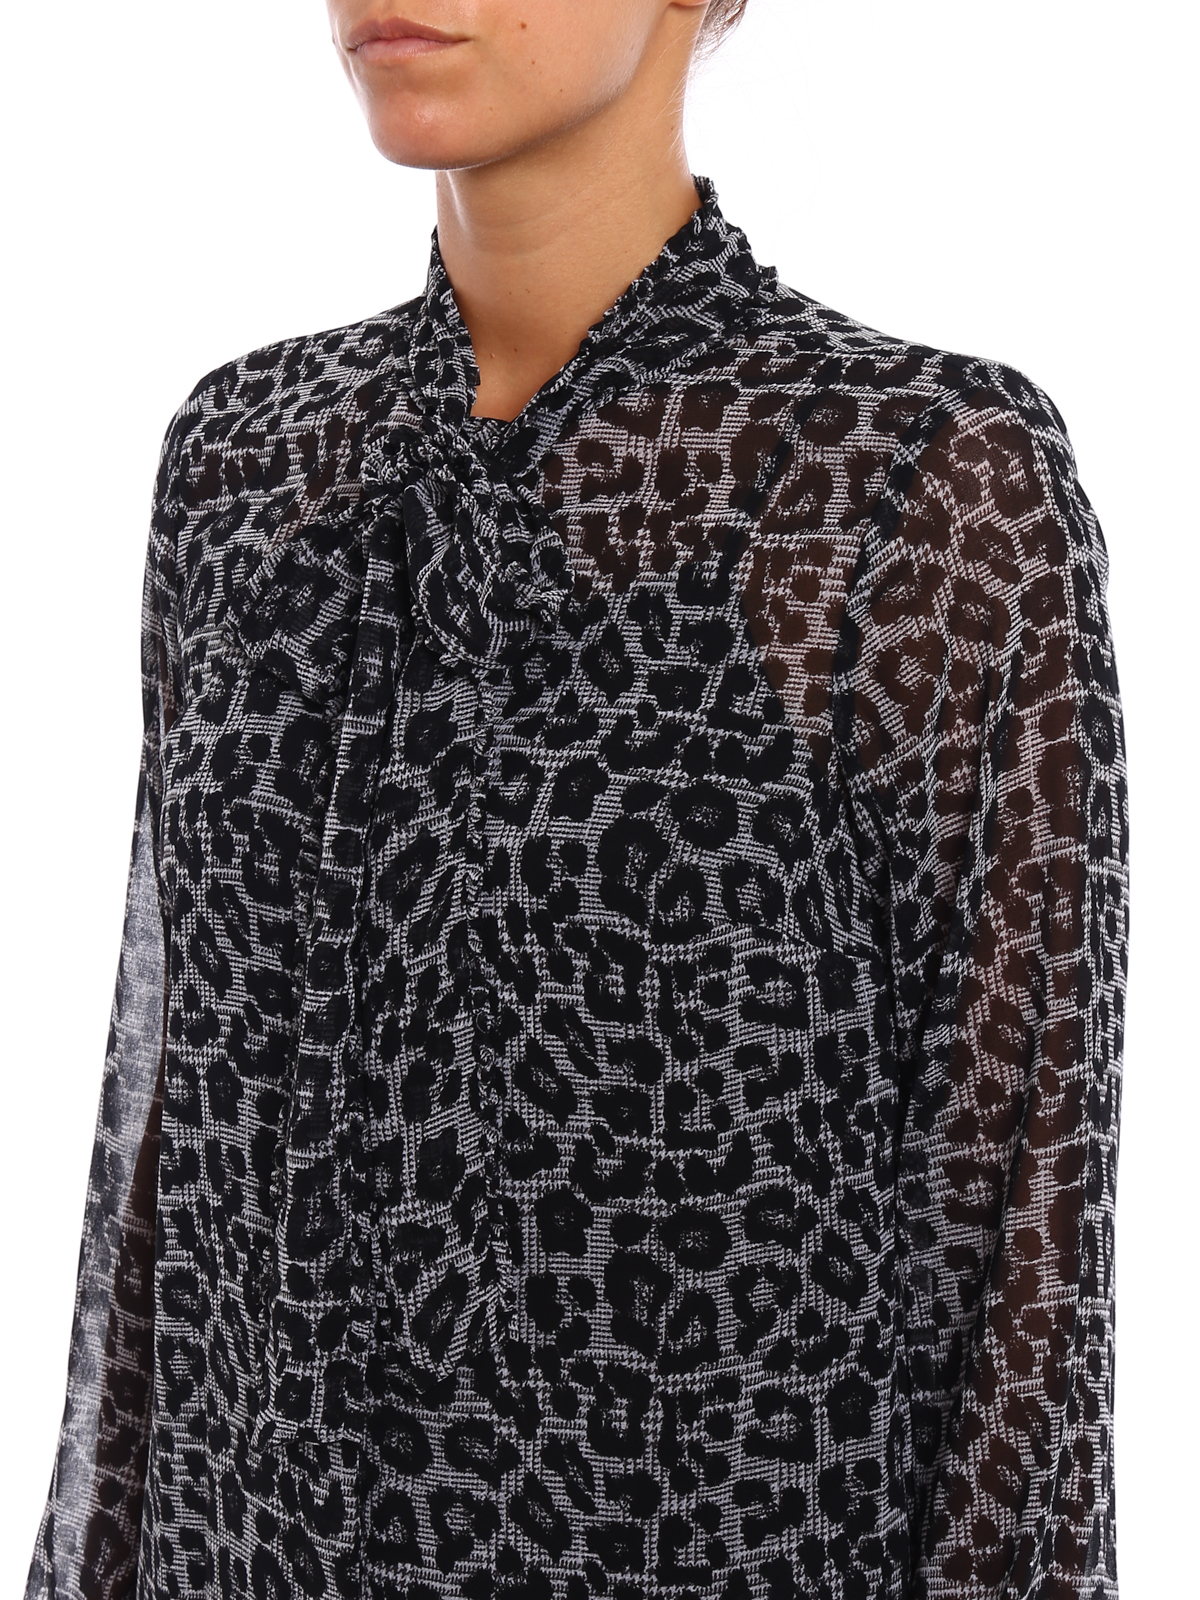 Michael Kors - Animal print shirt with 